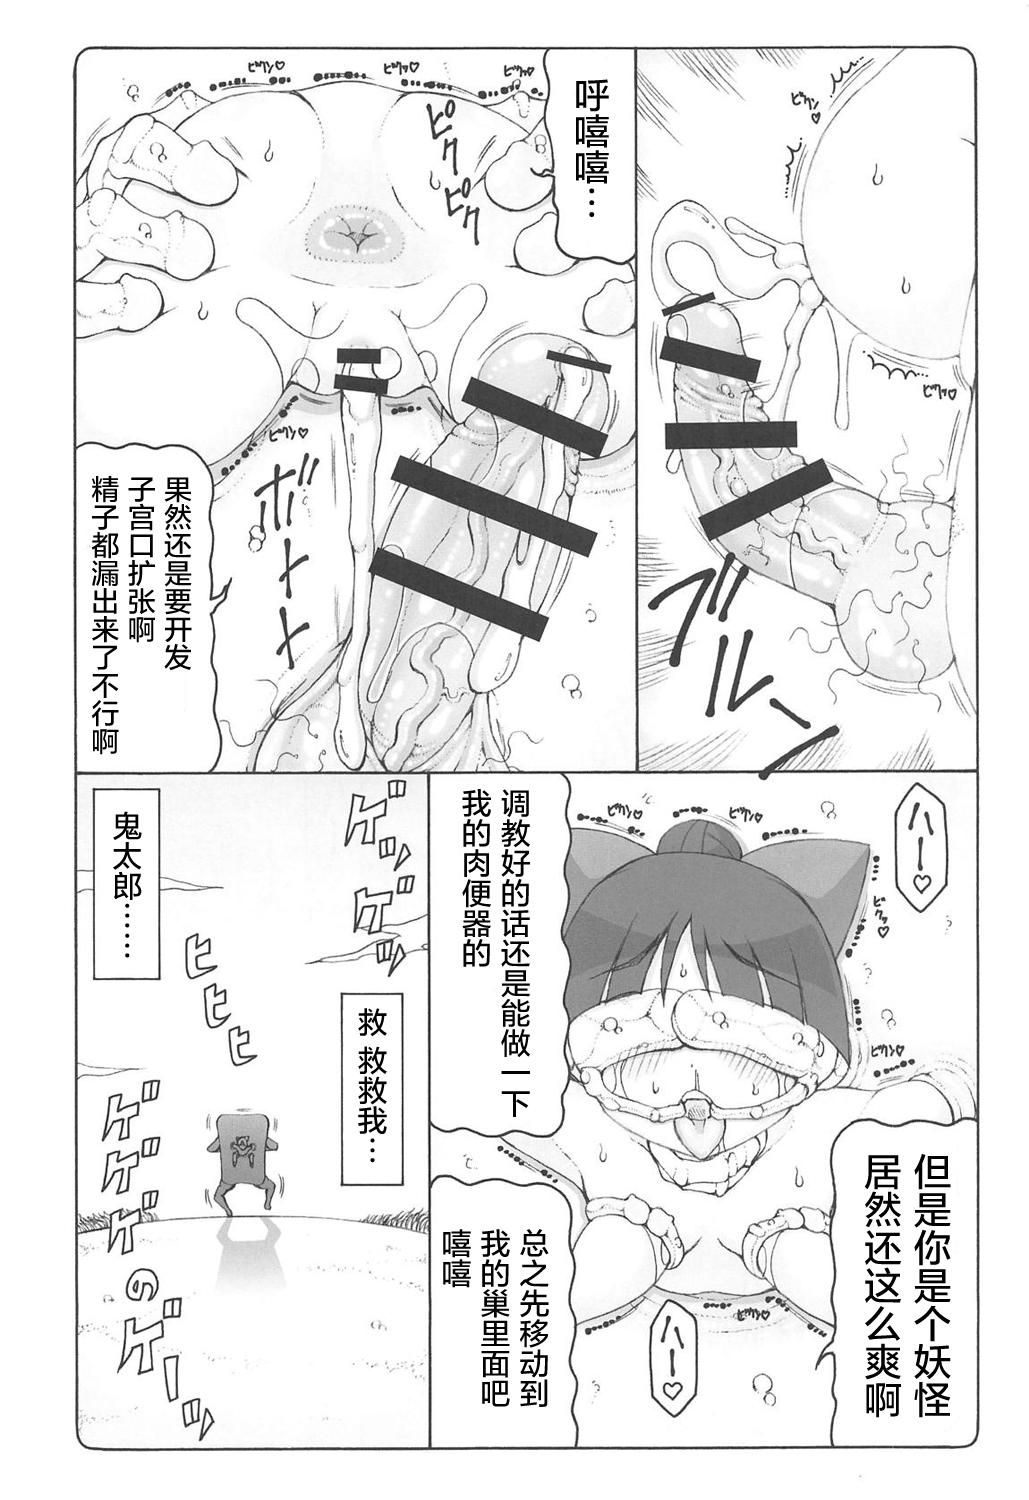 Off Nuko Musume vs Youkai Shirikabe - Gegege no kitarou Com - Page 26